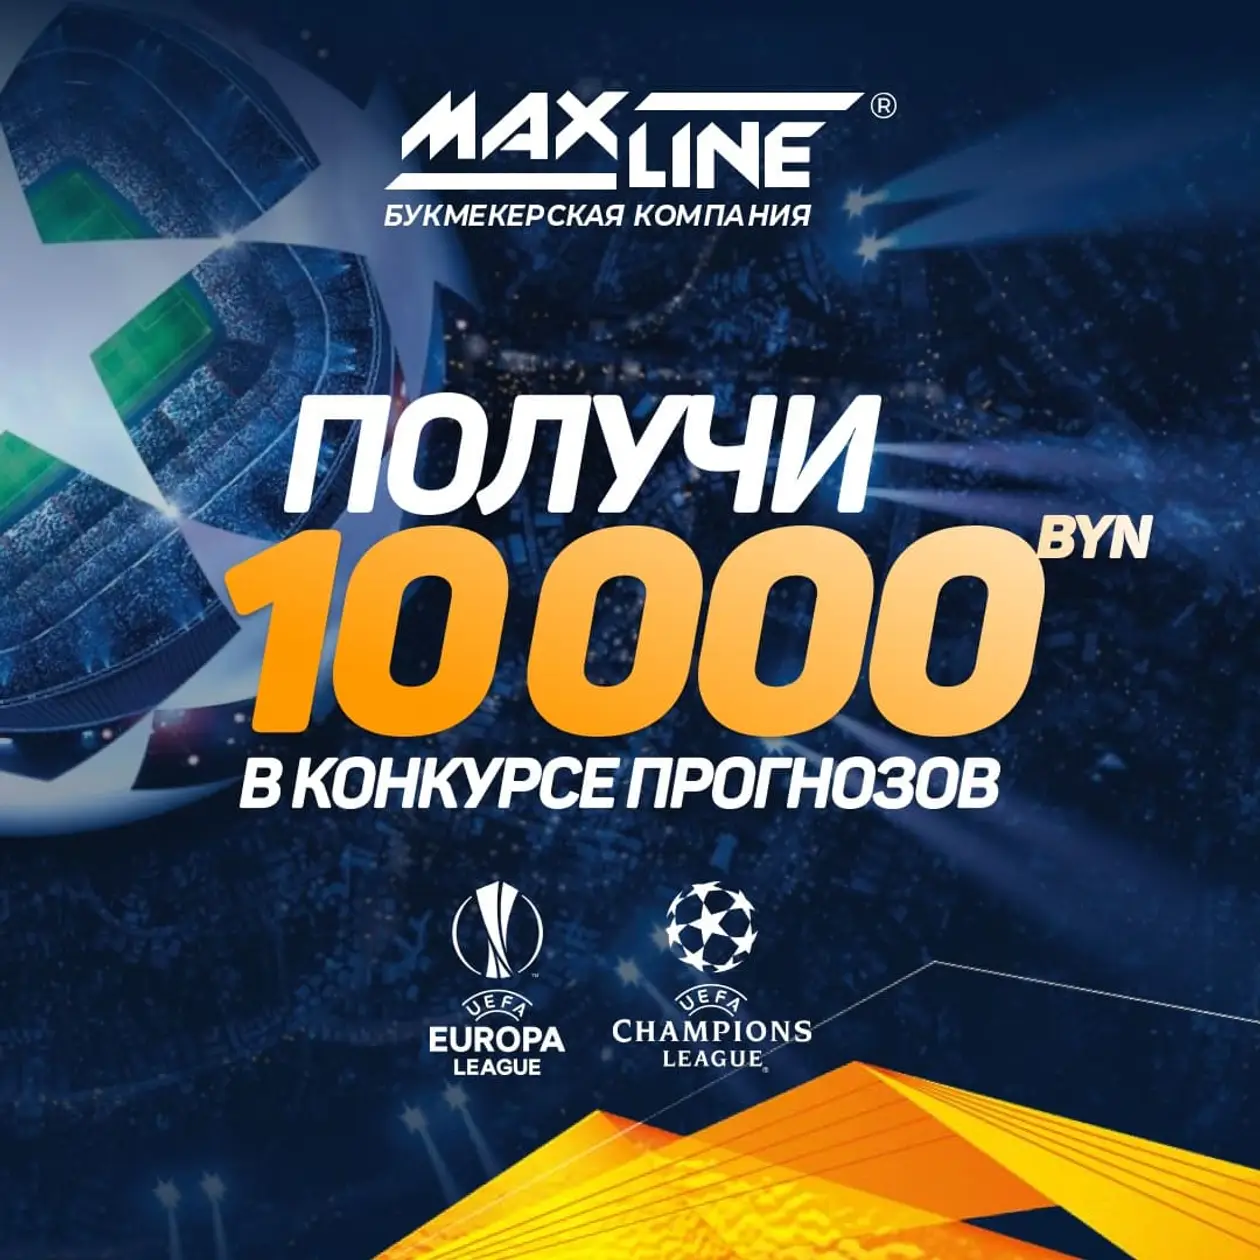 Конкурс на матчи плей-офф Лиги чемпионов и Лиги Европы. Главный приз составляет 10 000 рублей!